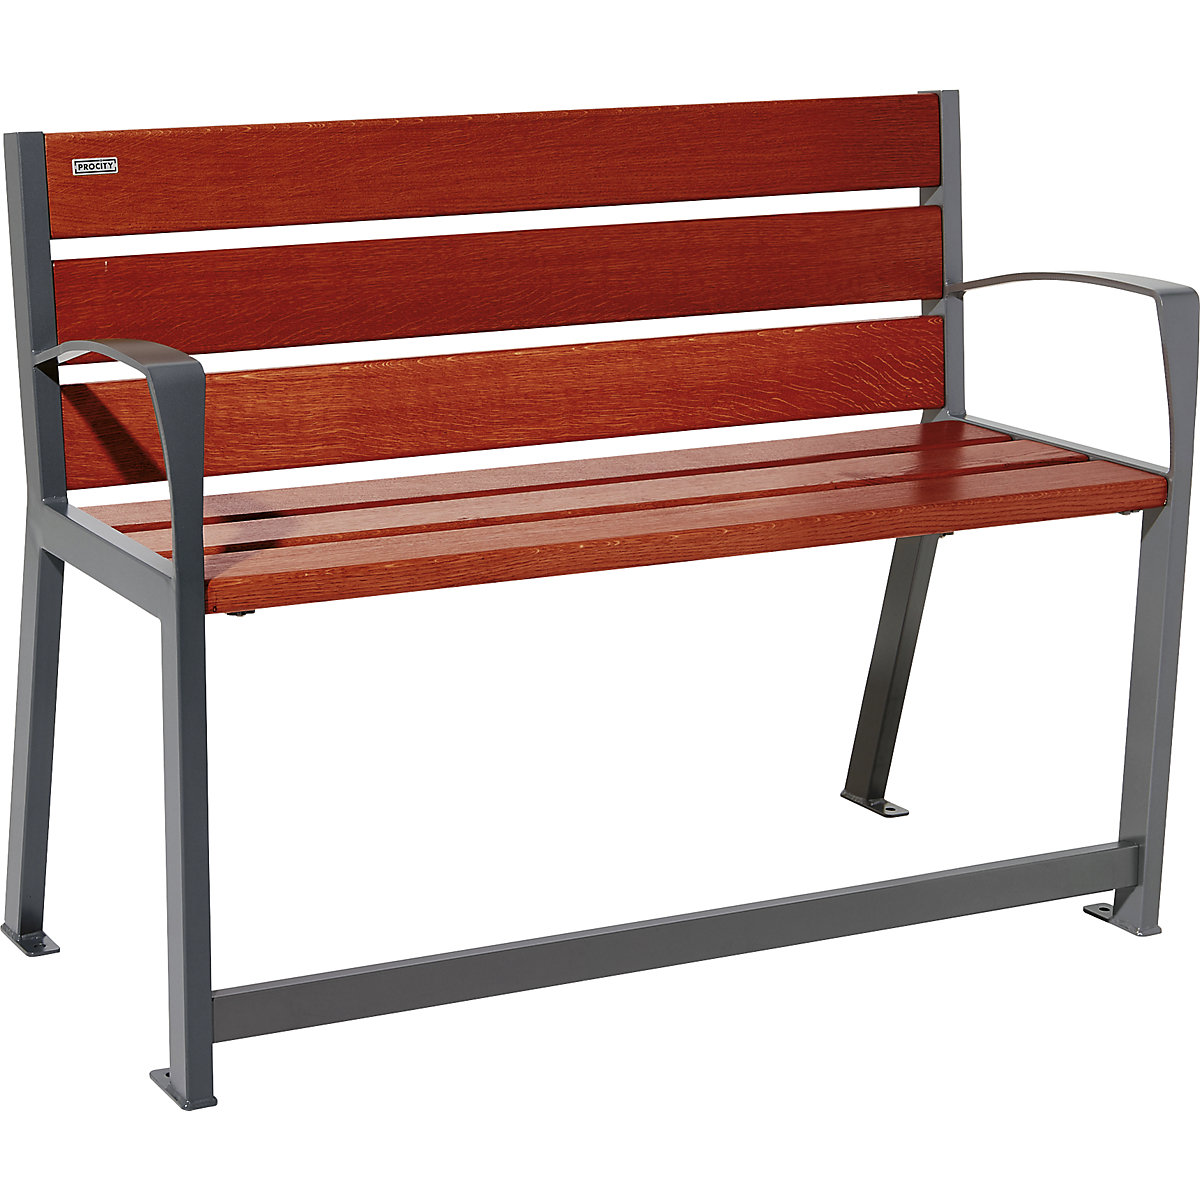 SILAOS® bench made of wood - PROCITY